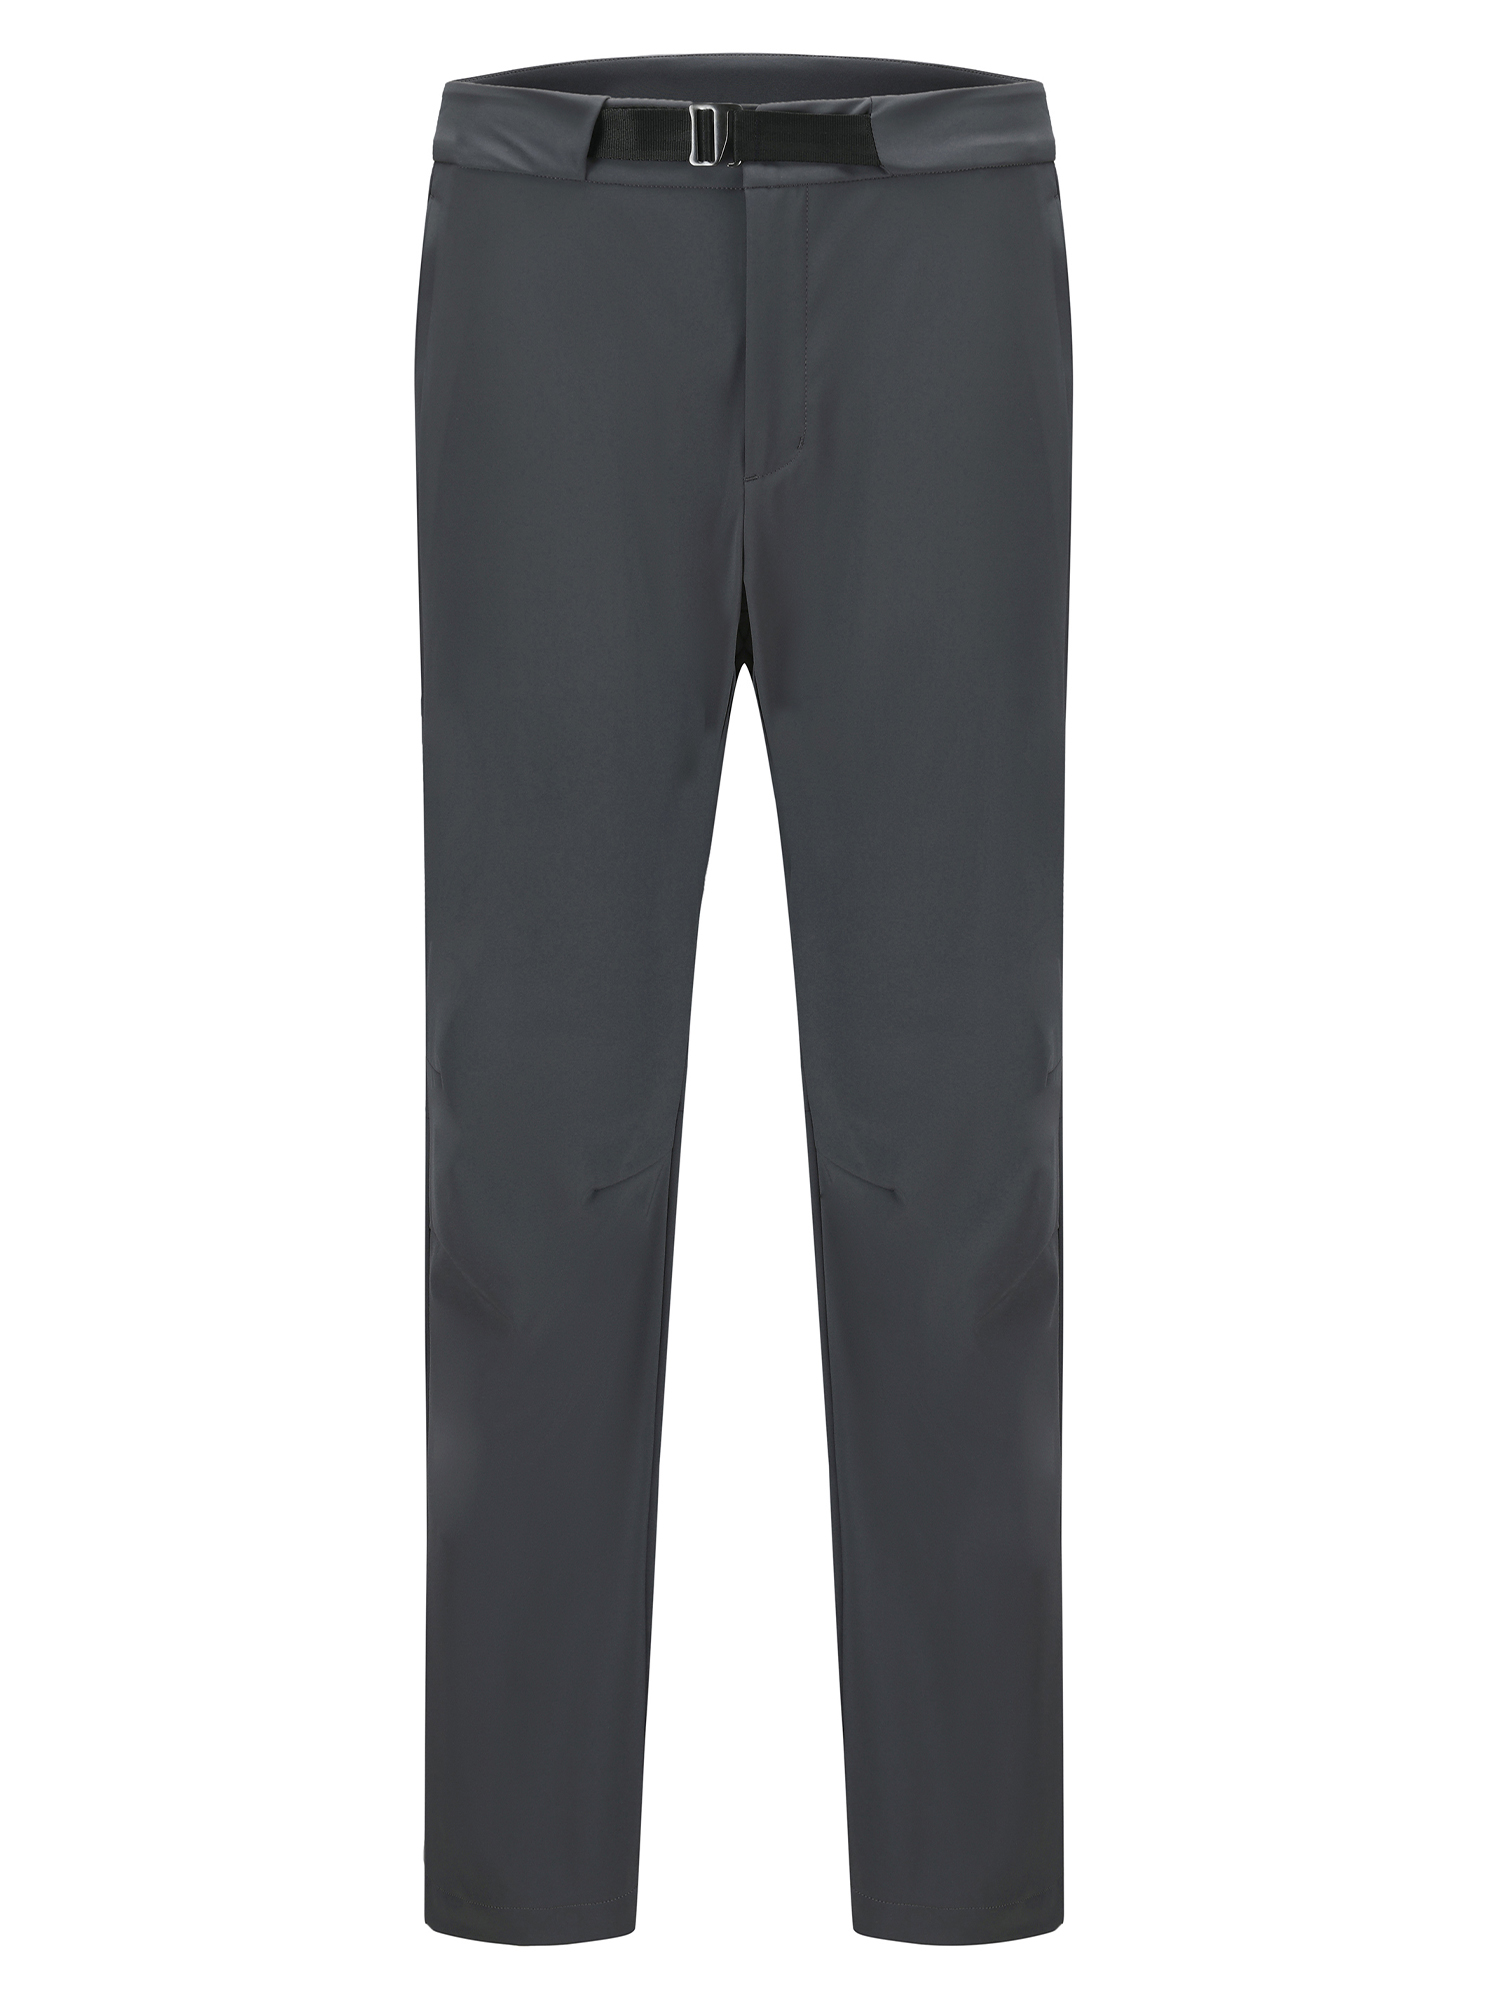 Спортивные брюки мужские Toread Men's Off-Road Softshell Trousers серые XL